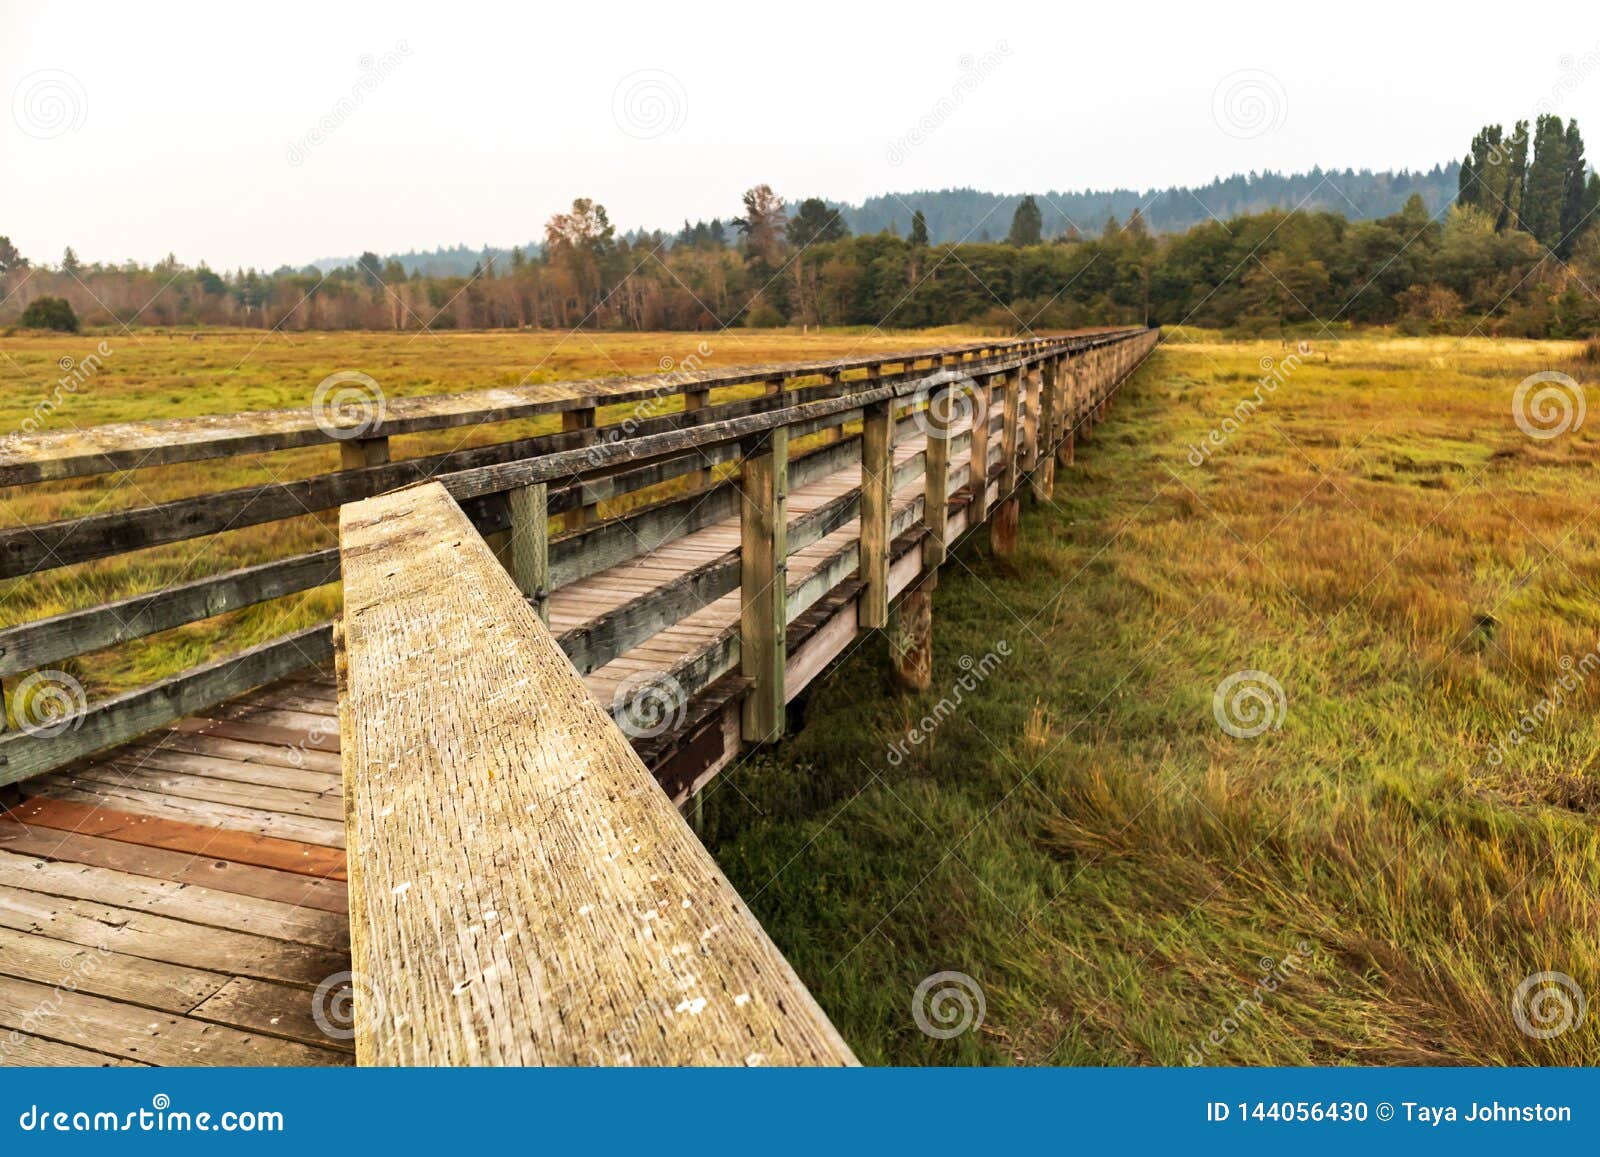 Wooden Walkway In Wetland Bird Sanctuary Stock Photo Image Of